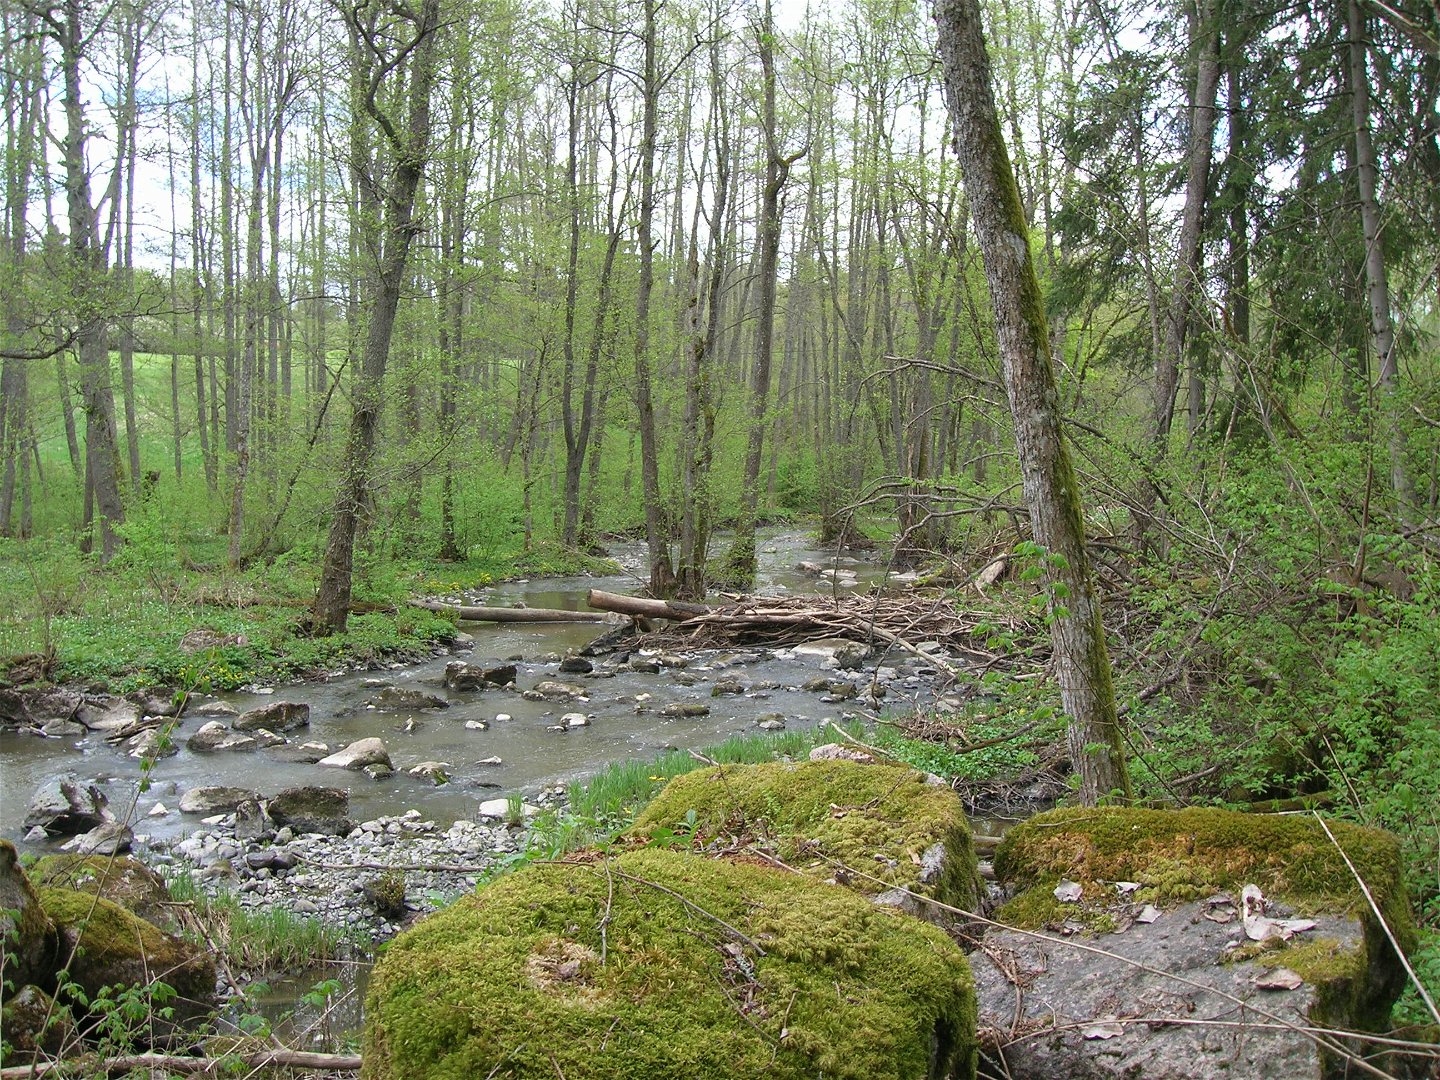 En å rinner genom en ravin. Flera omkullfallna döda trädstammar ligger i ån.